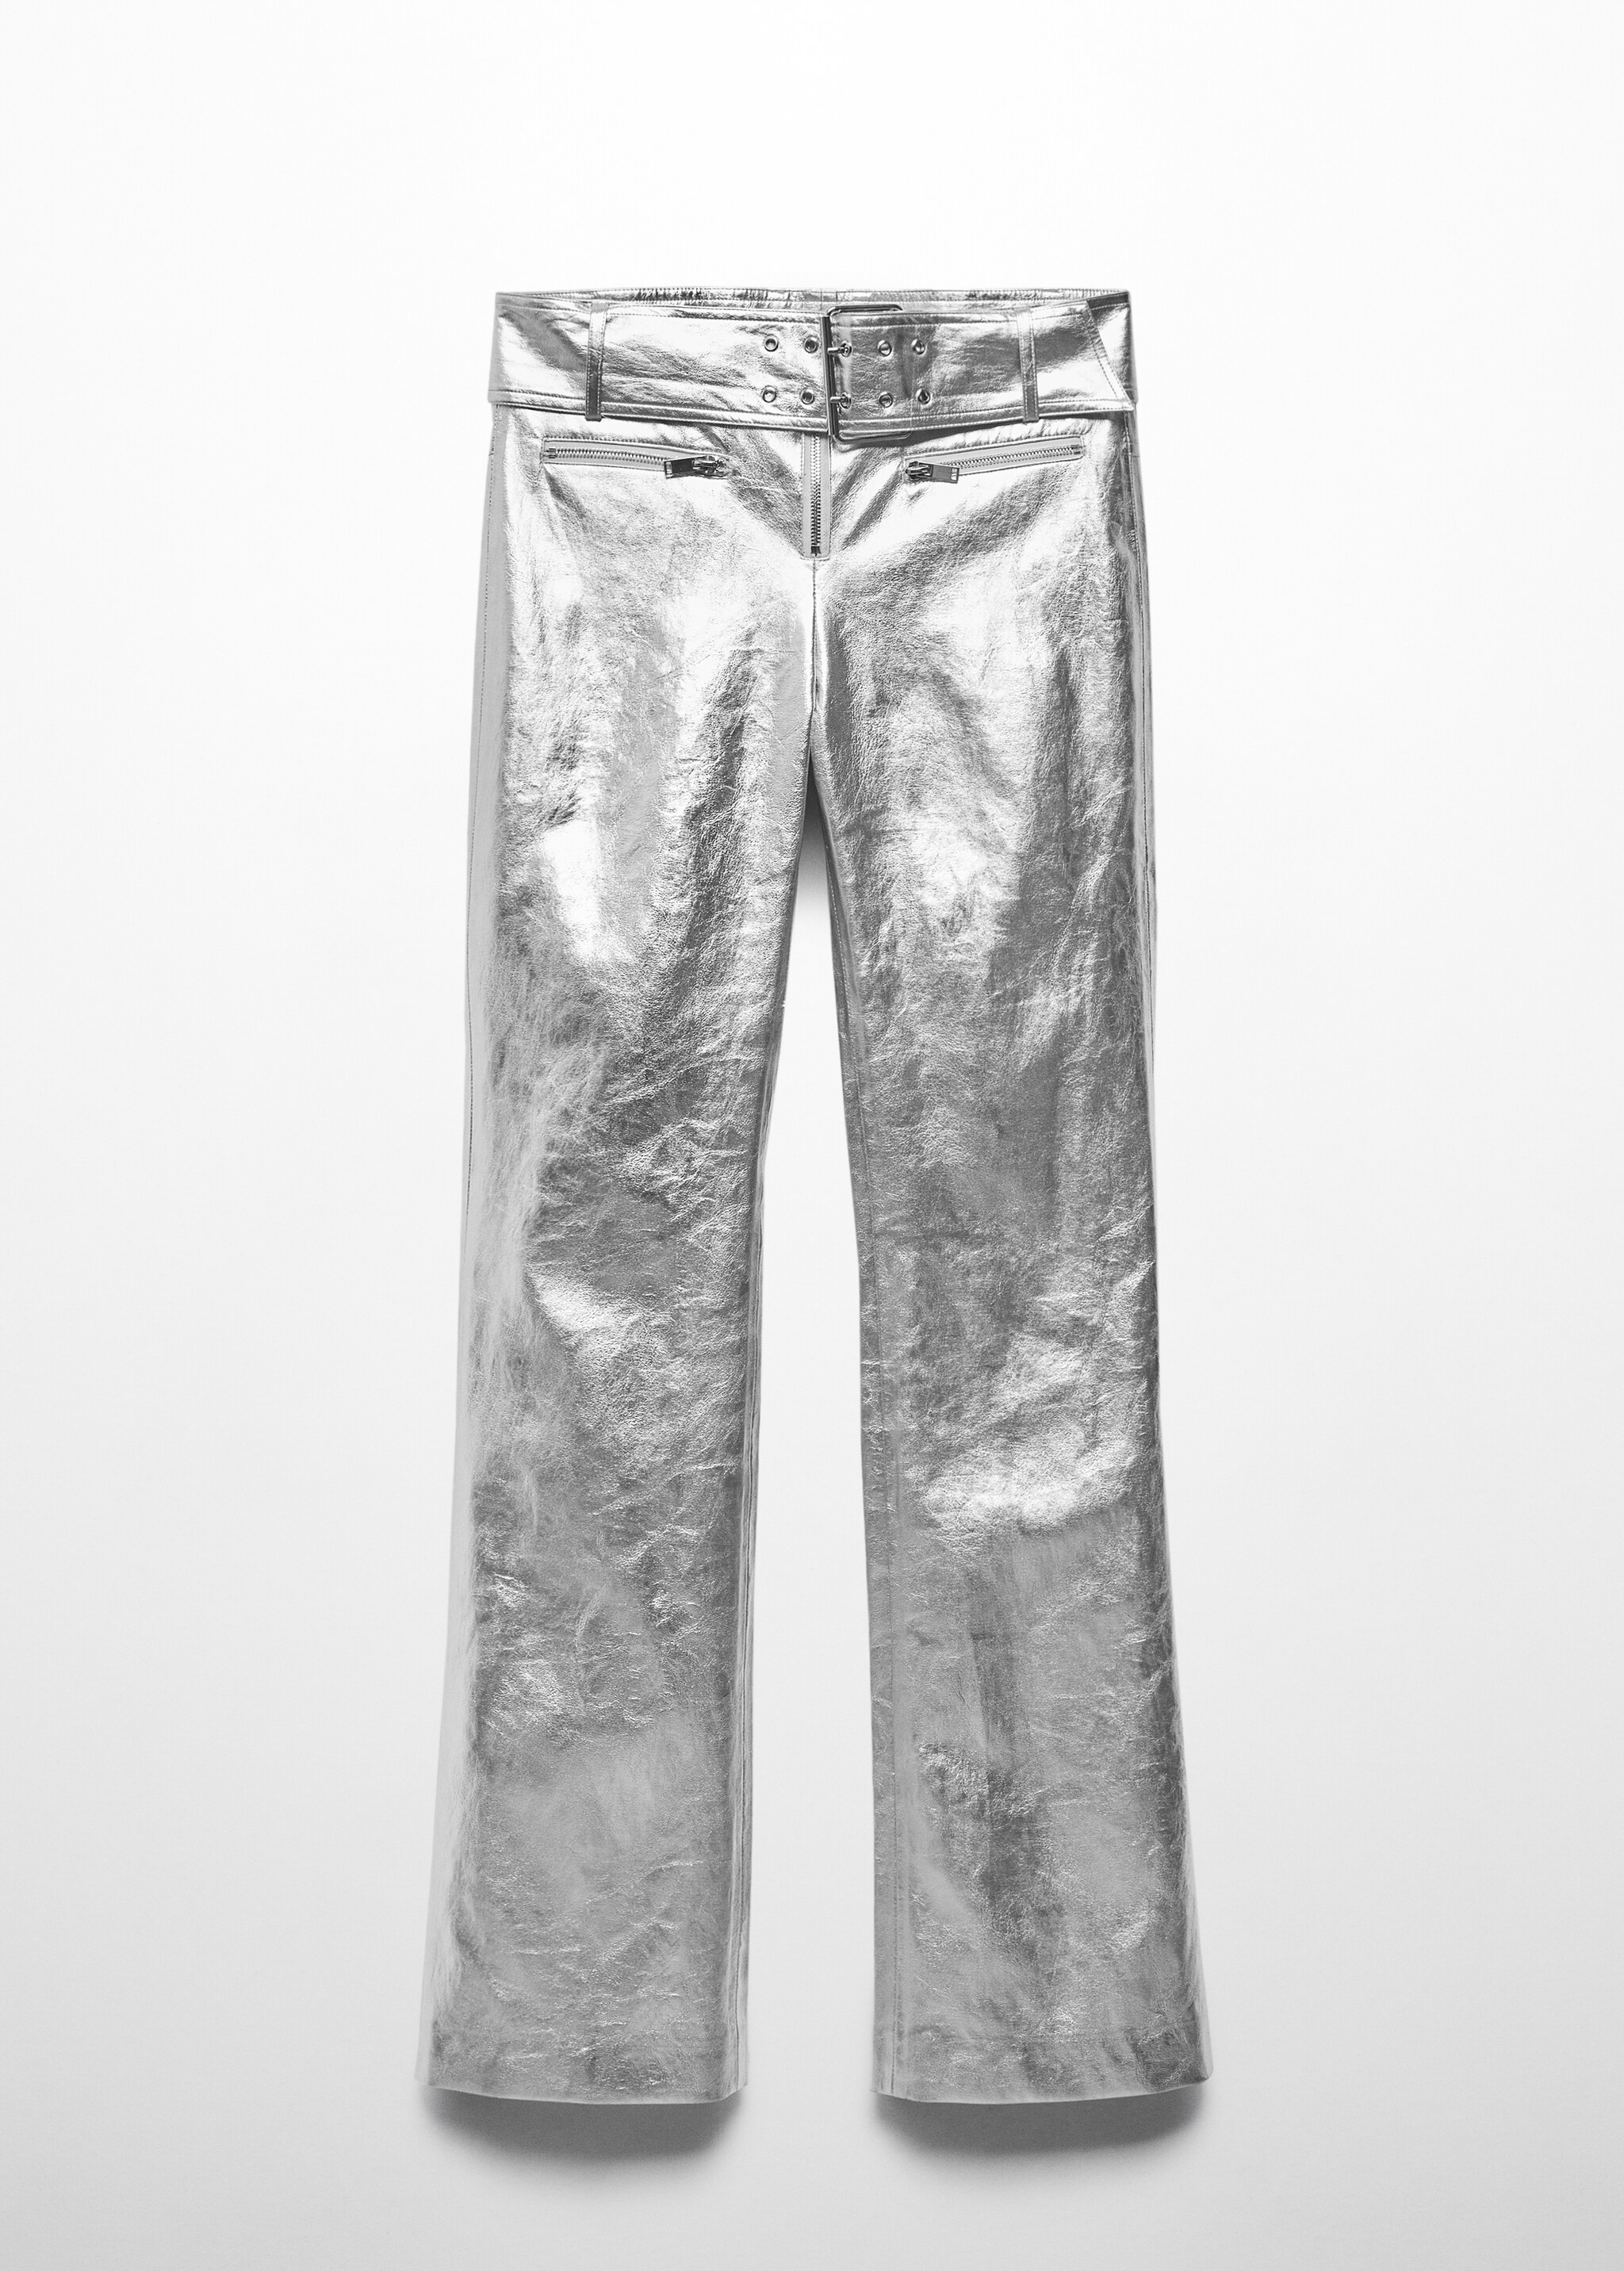 Pantalón metalizado cinturón - Artículo sin modelo